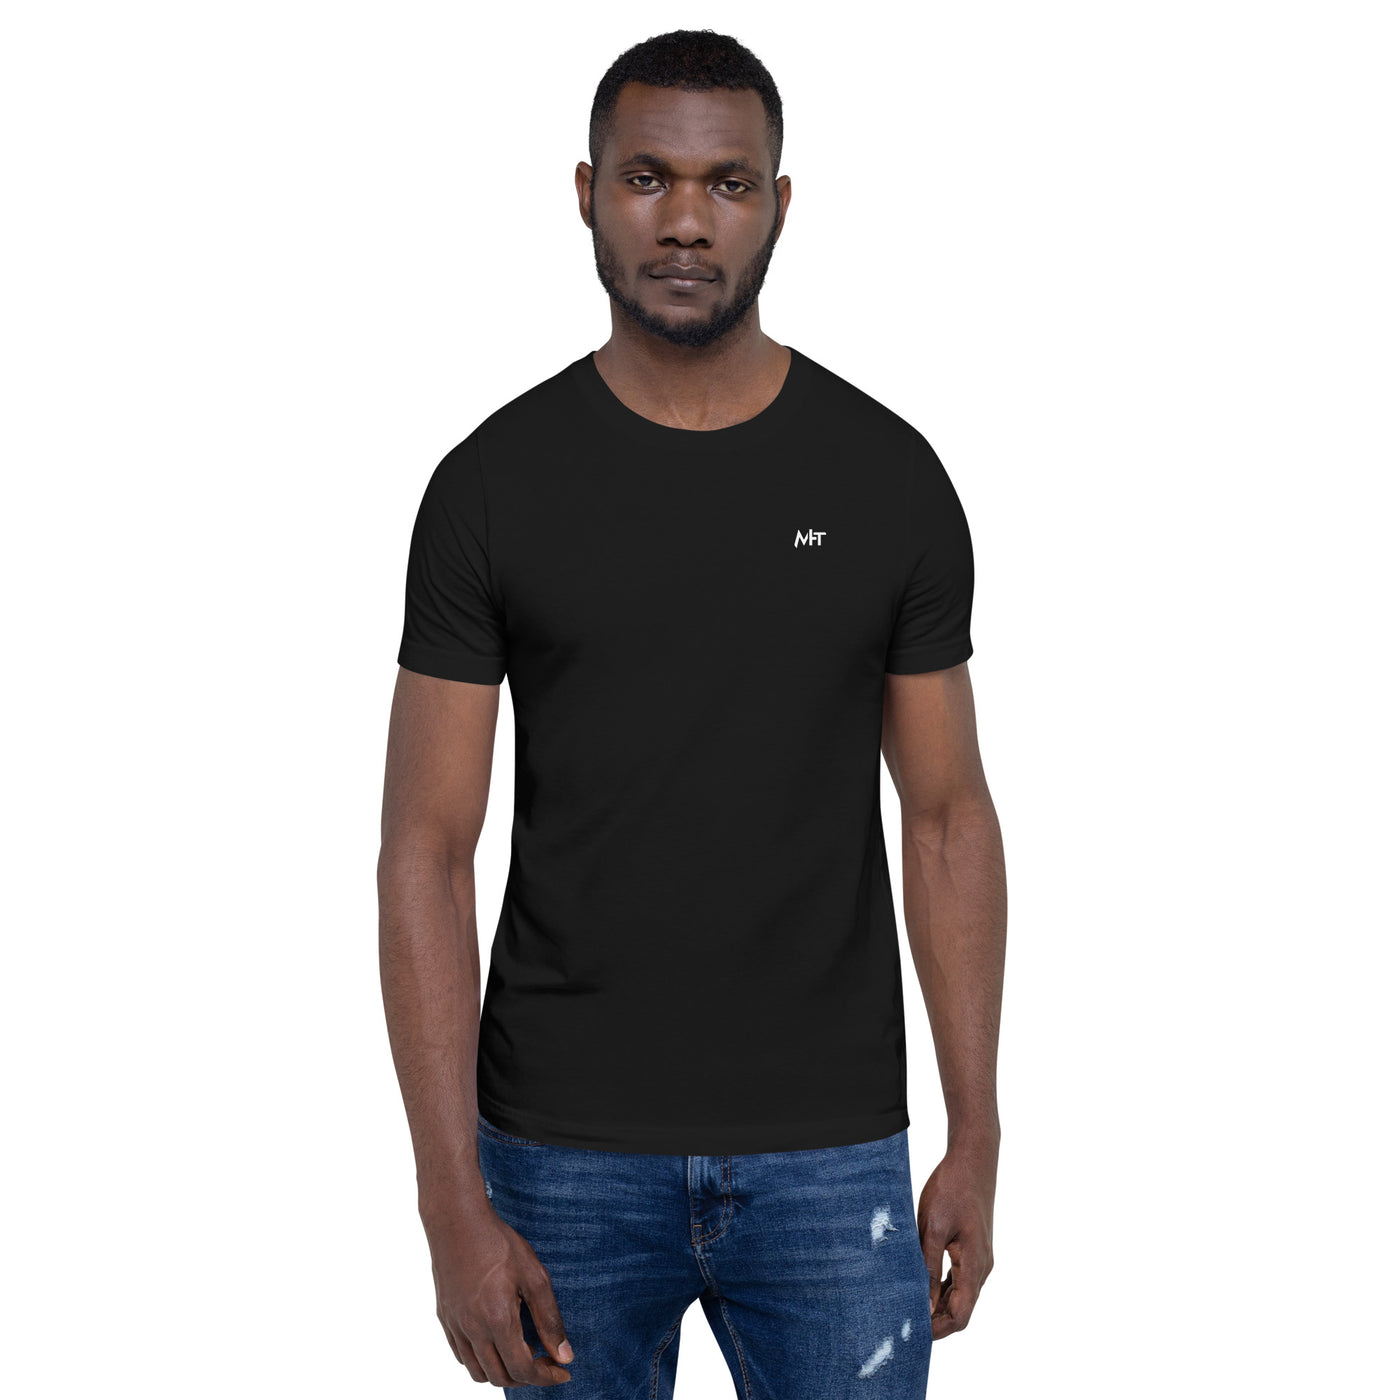 BITCOIN CLUB V4 - Unisex t-shirt ( Back Print )